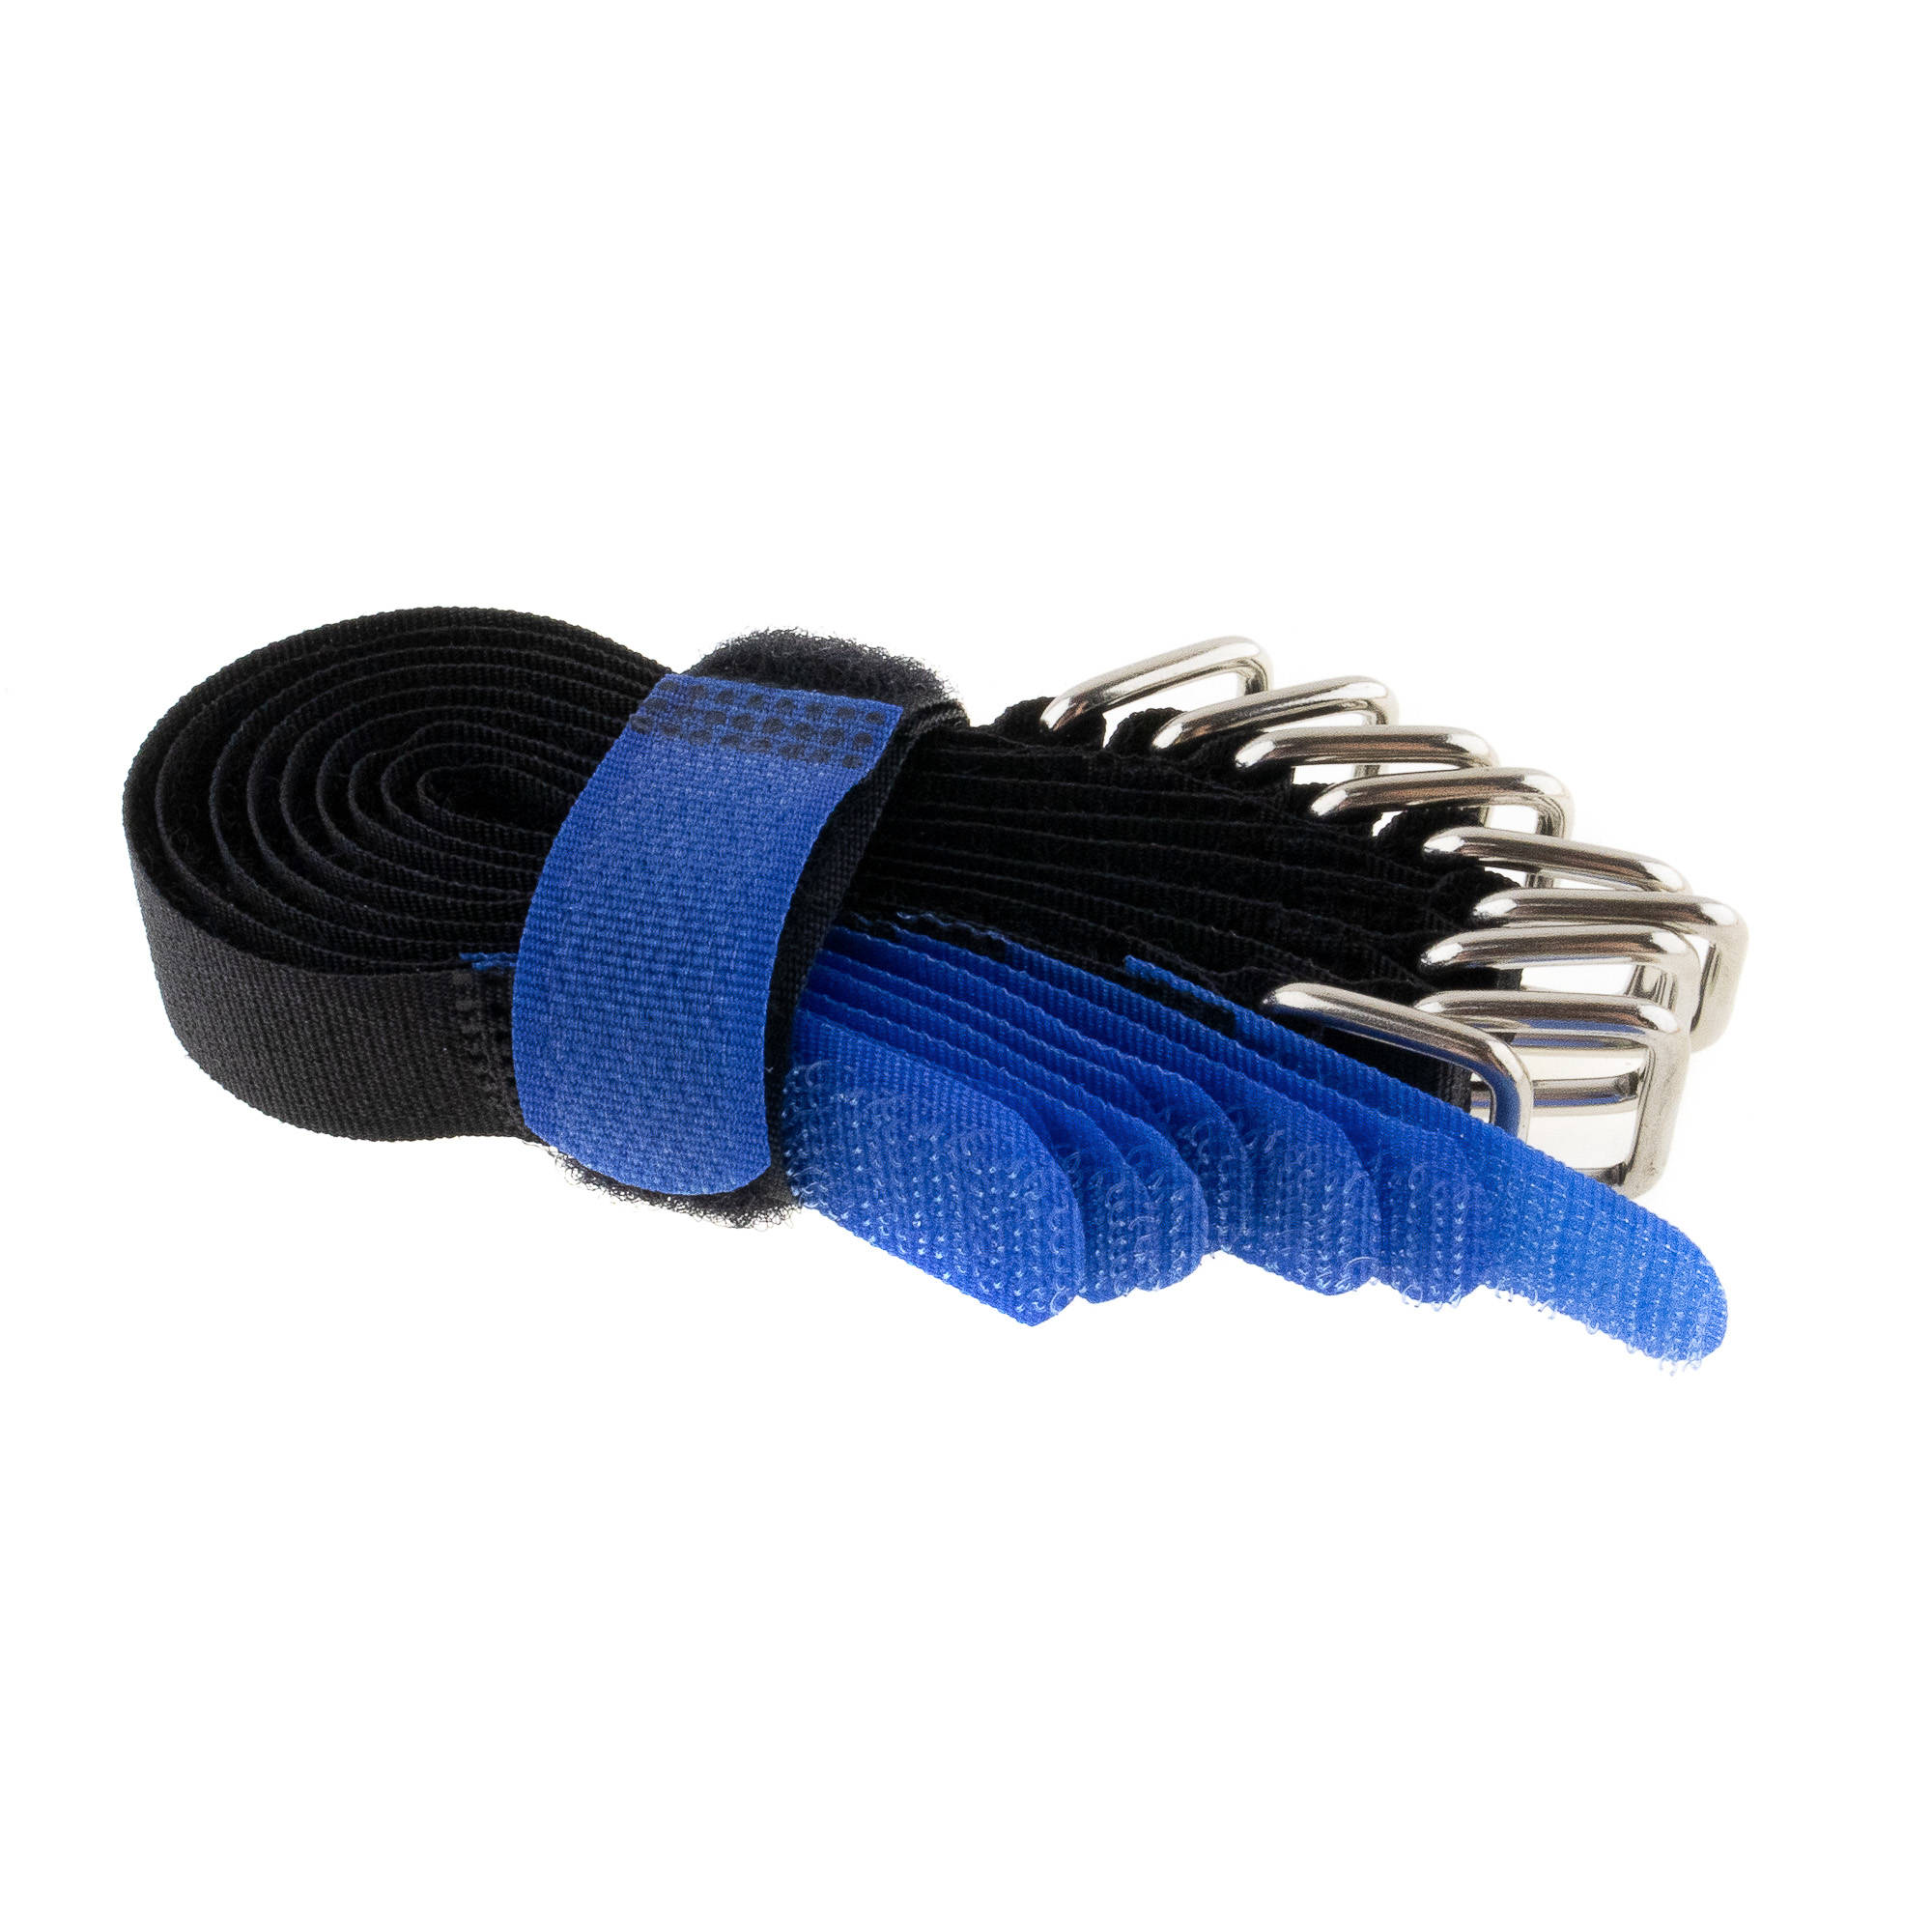 Hook-and-loop strap 150x16, black/blue, crossed, 10PCS